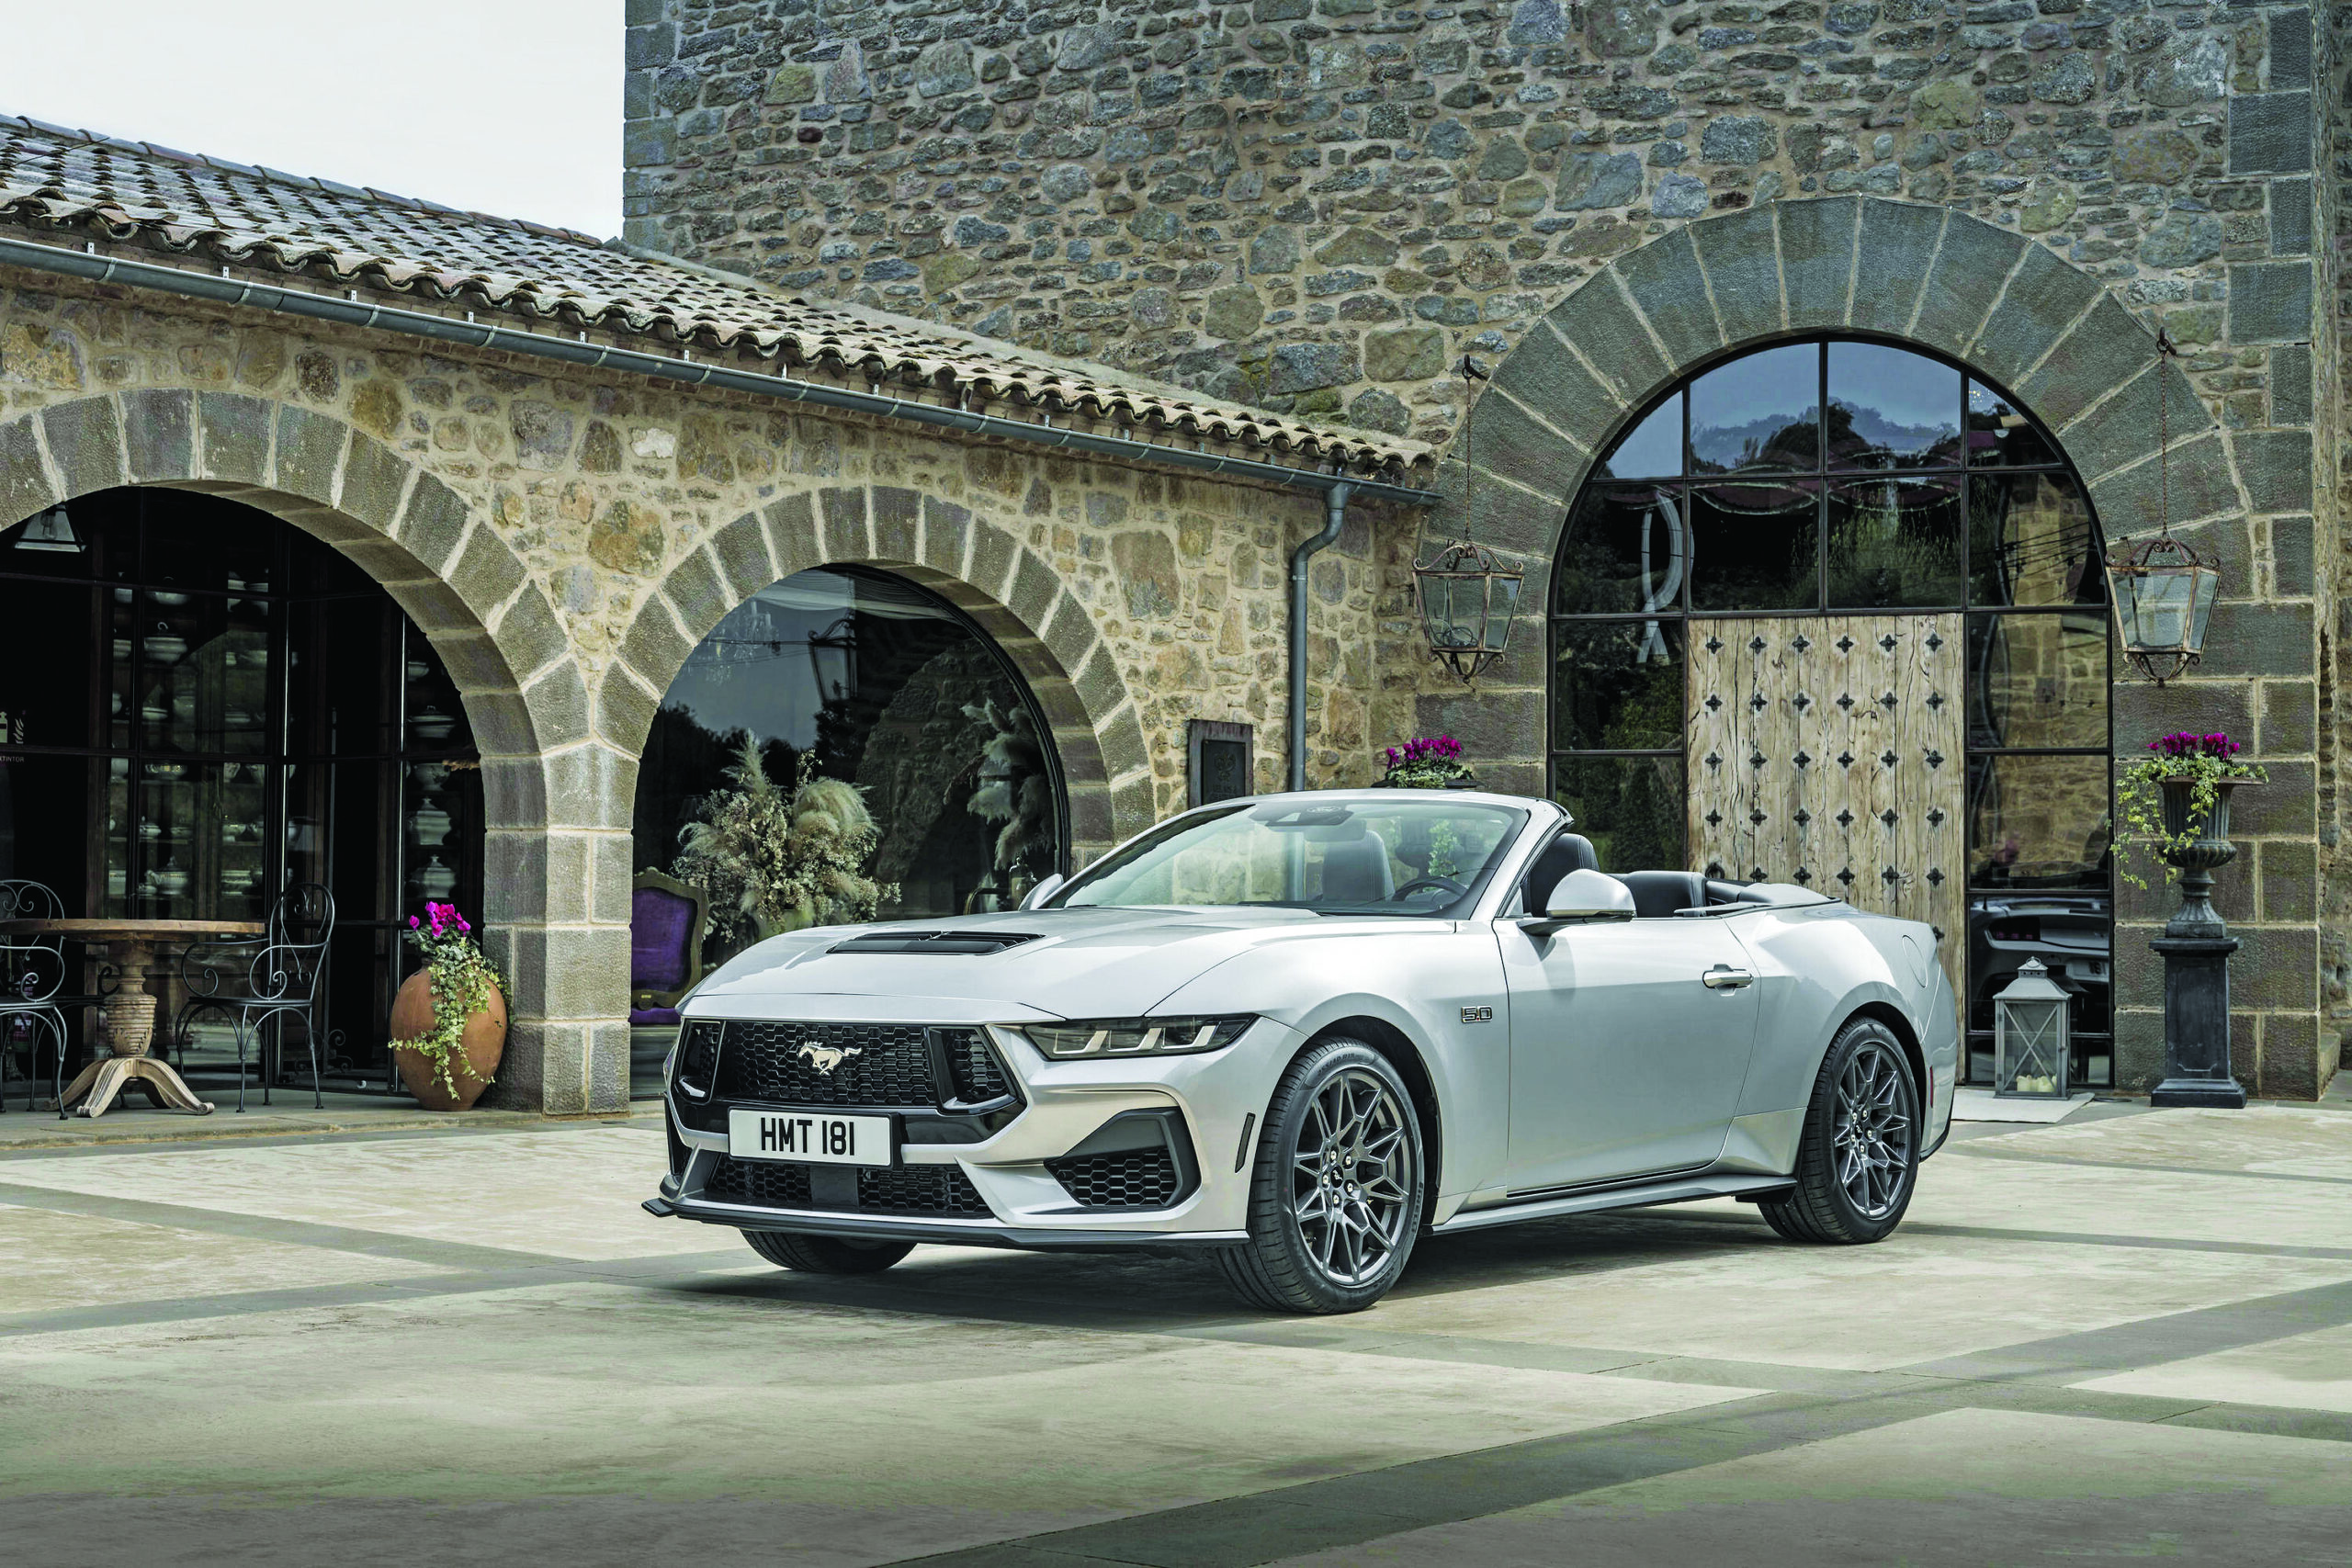 Η νέα Ford Mustang έρχεται στη χώρα μας - Στις εκδόσεις coupe και convertible